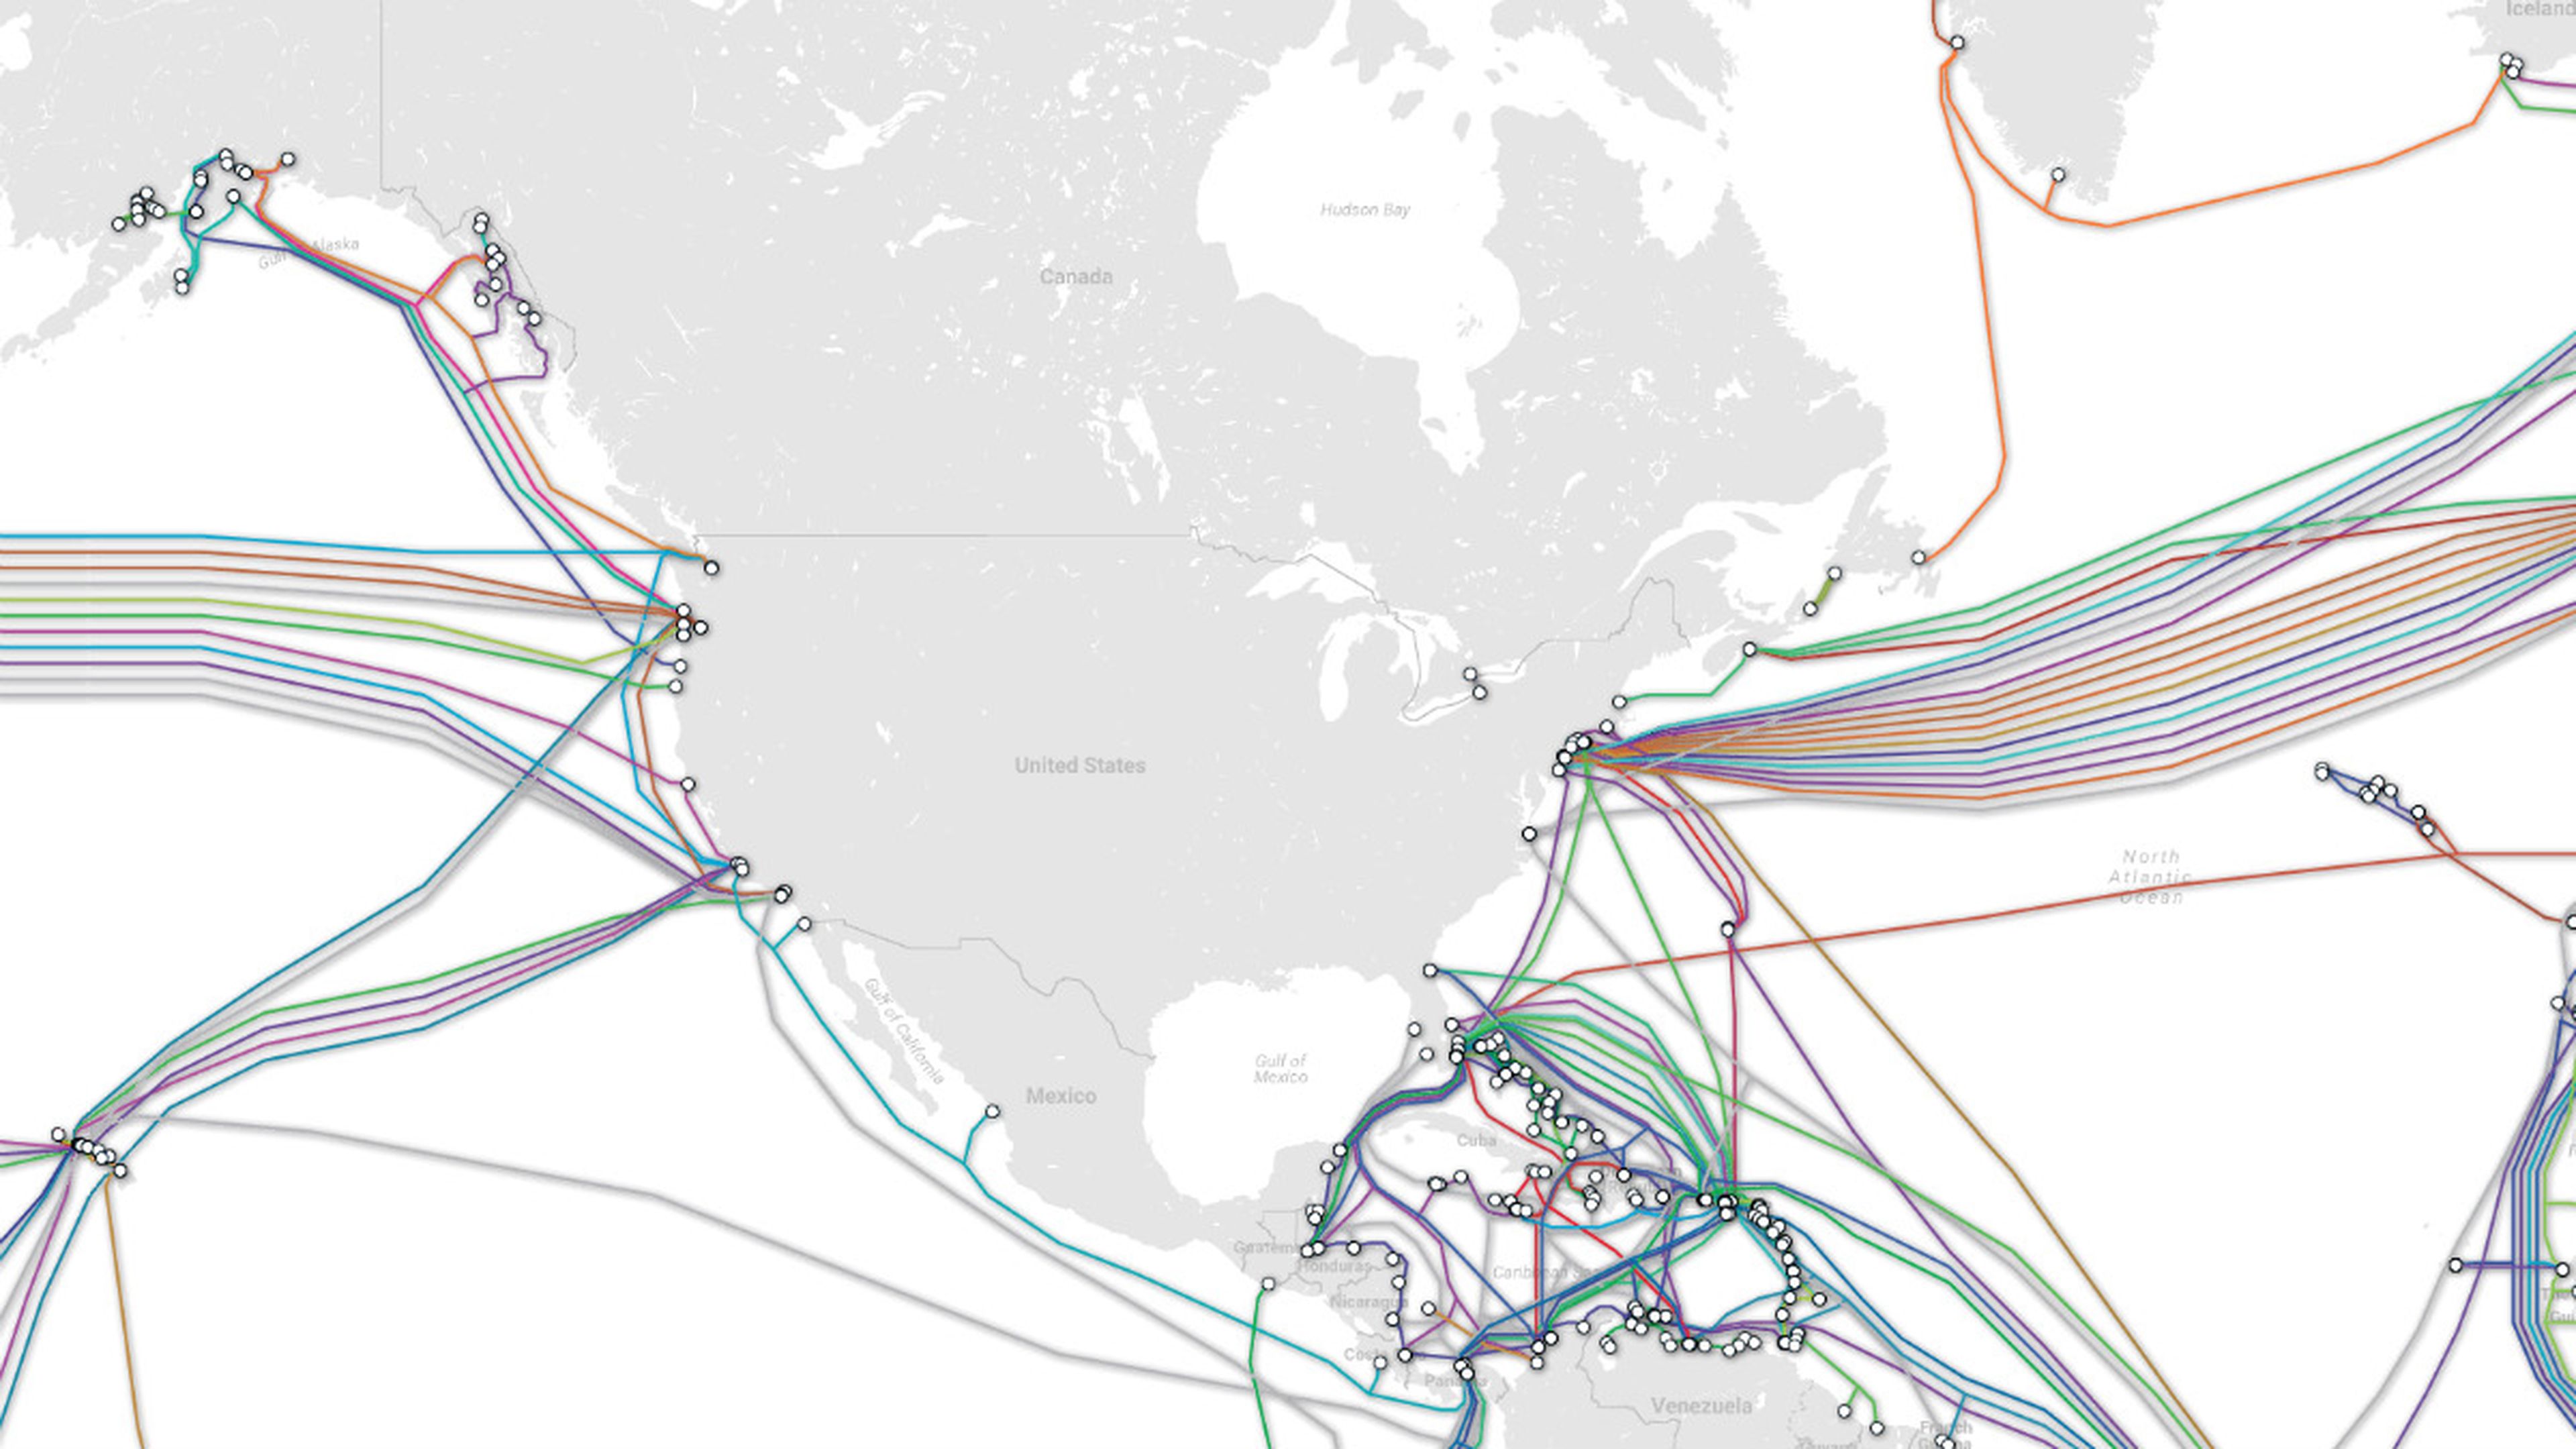 La red de cables en torno a Norteamérica.